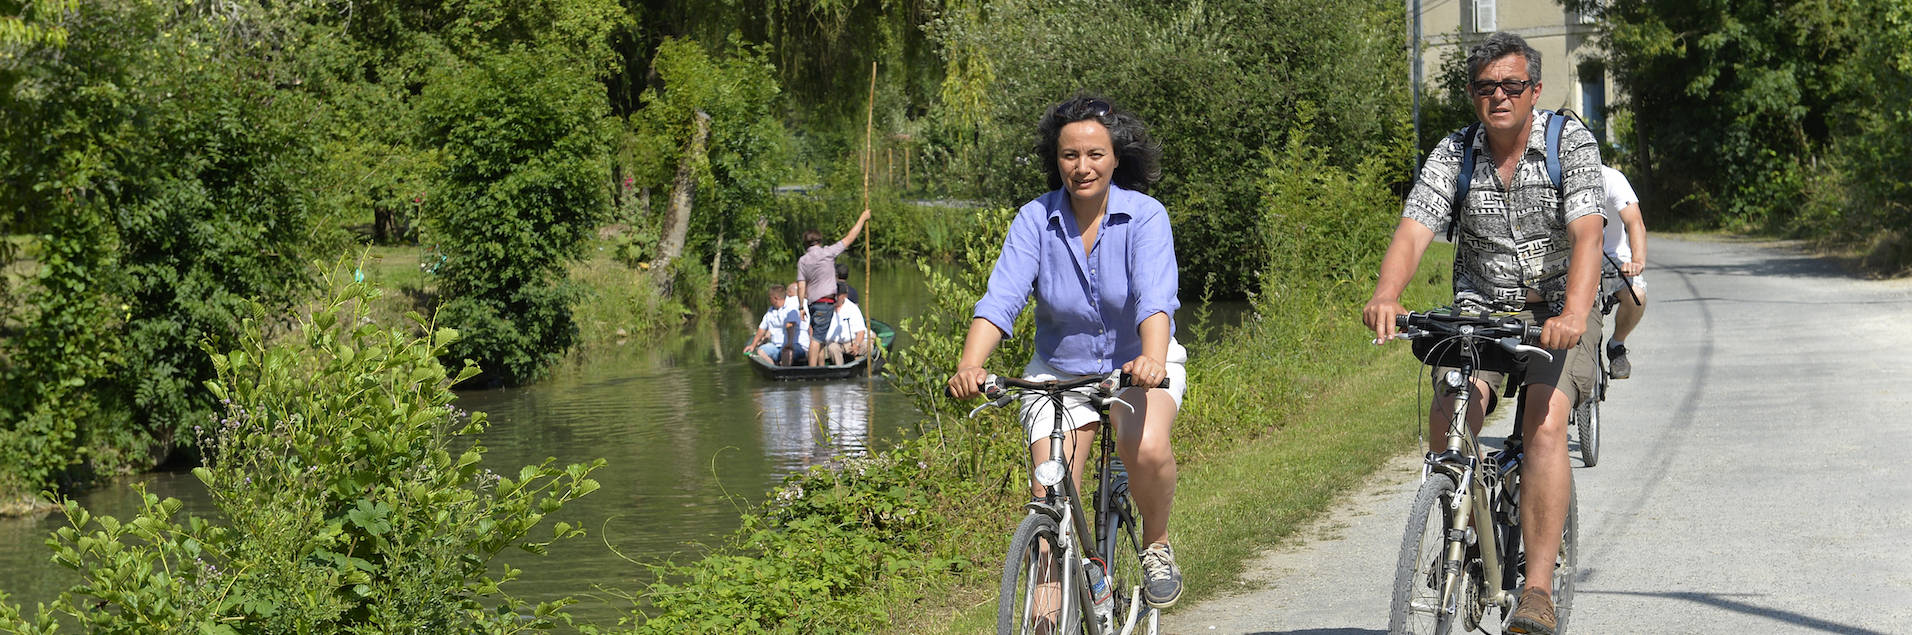 The Marais poitevin by bike